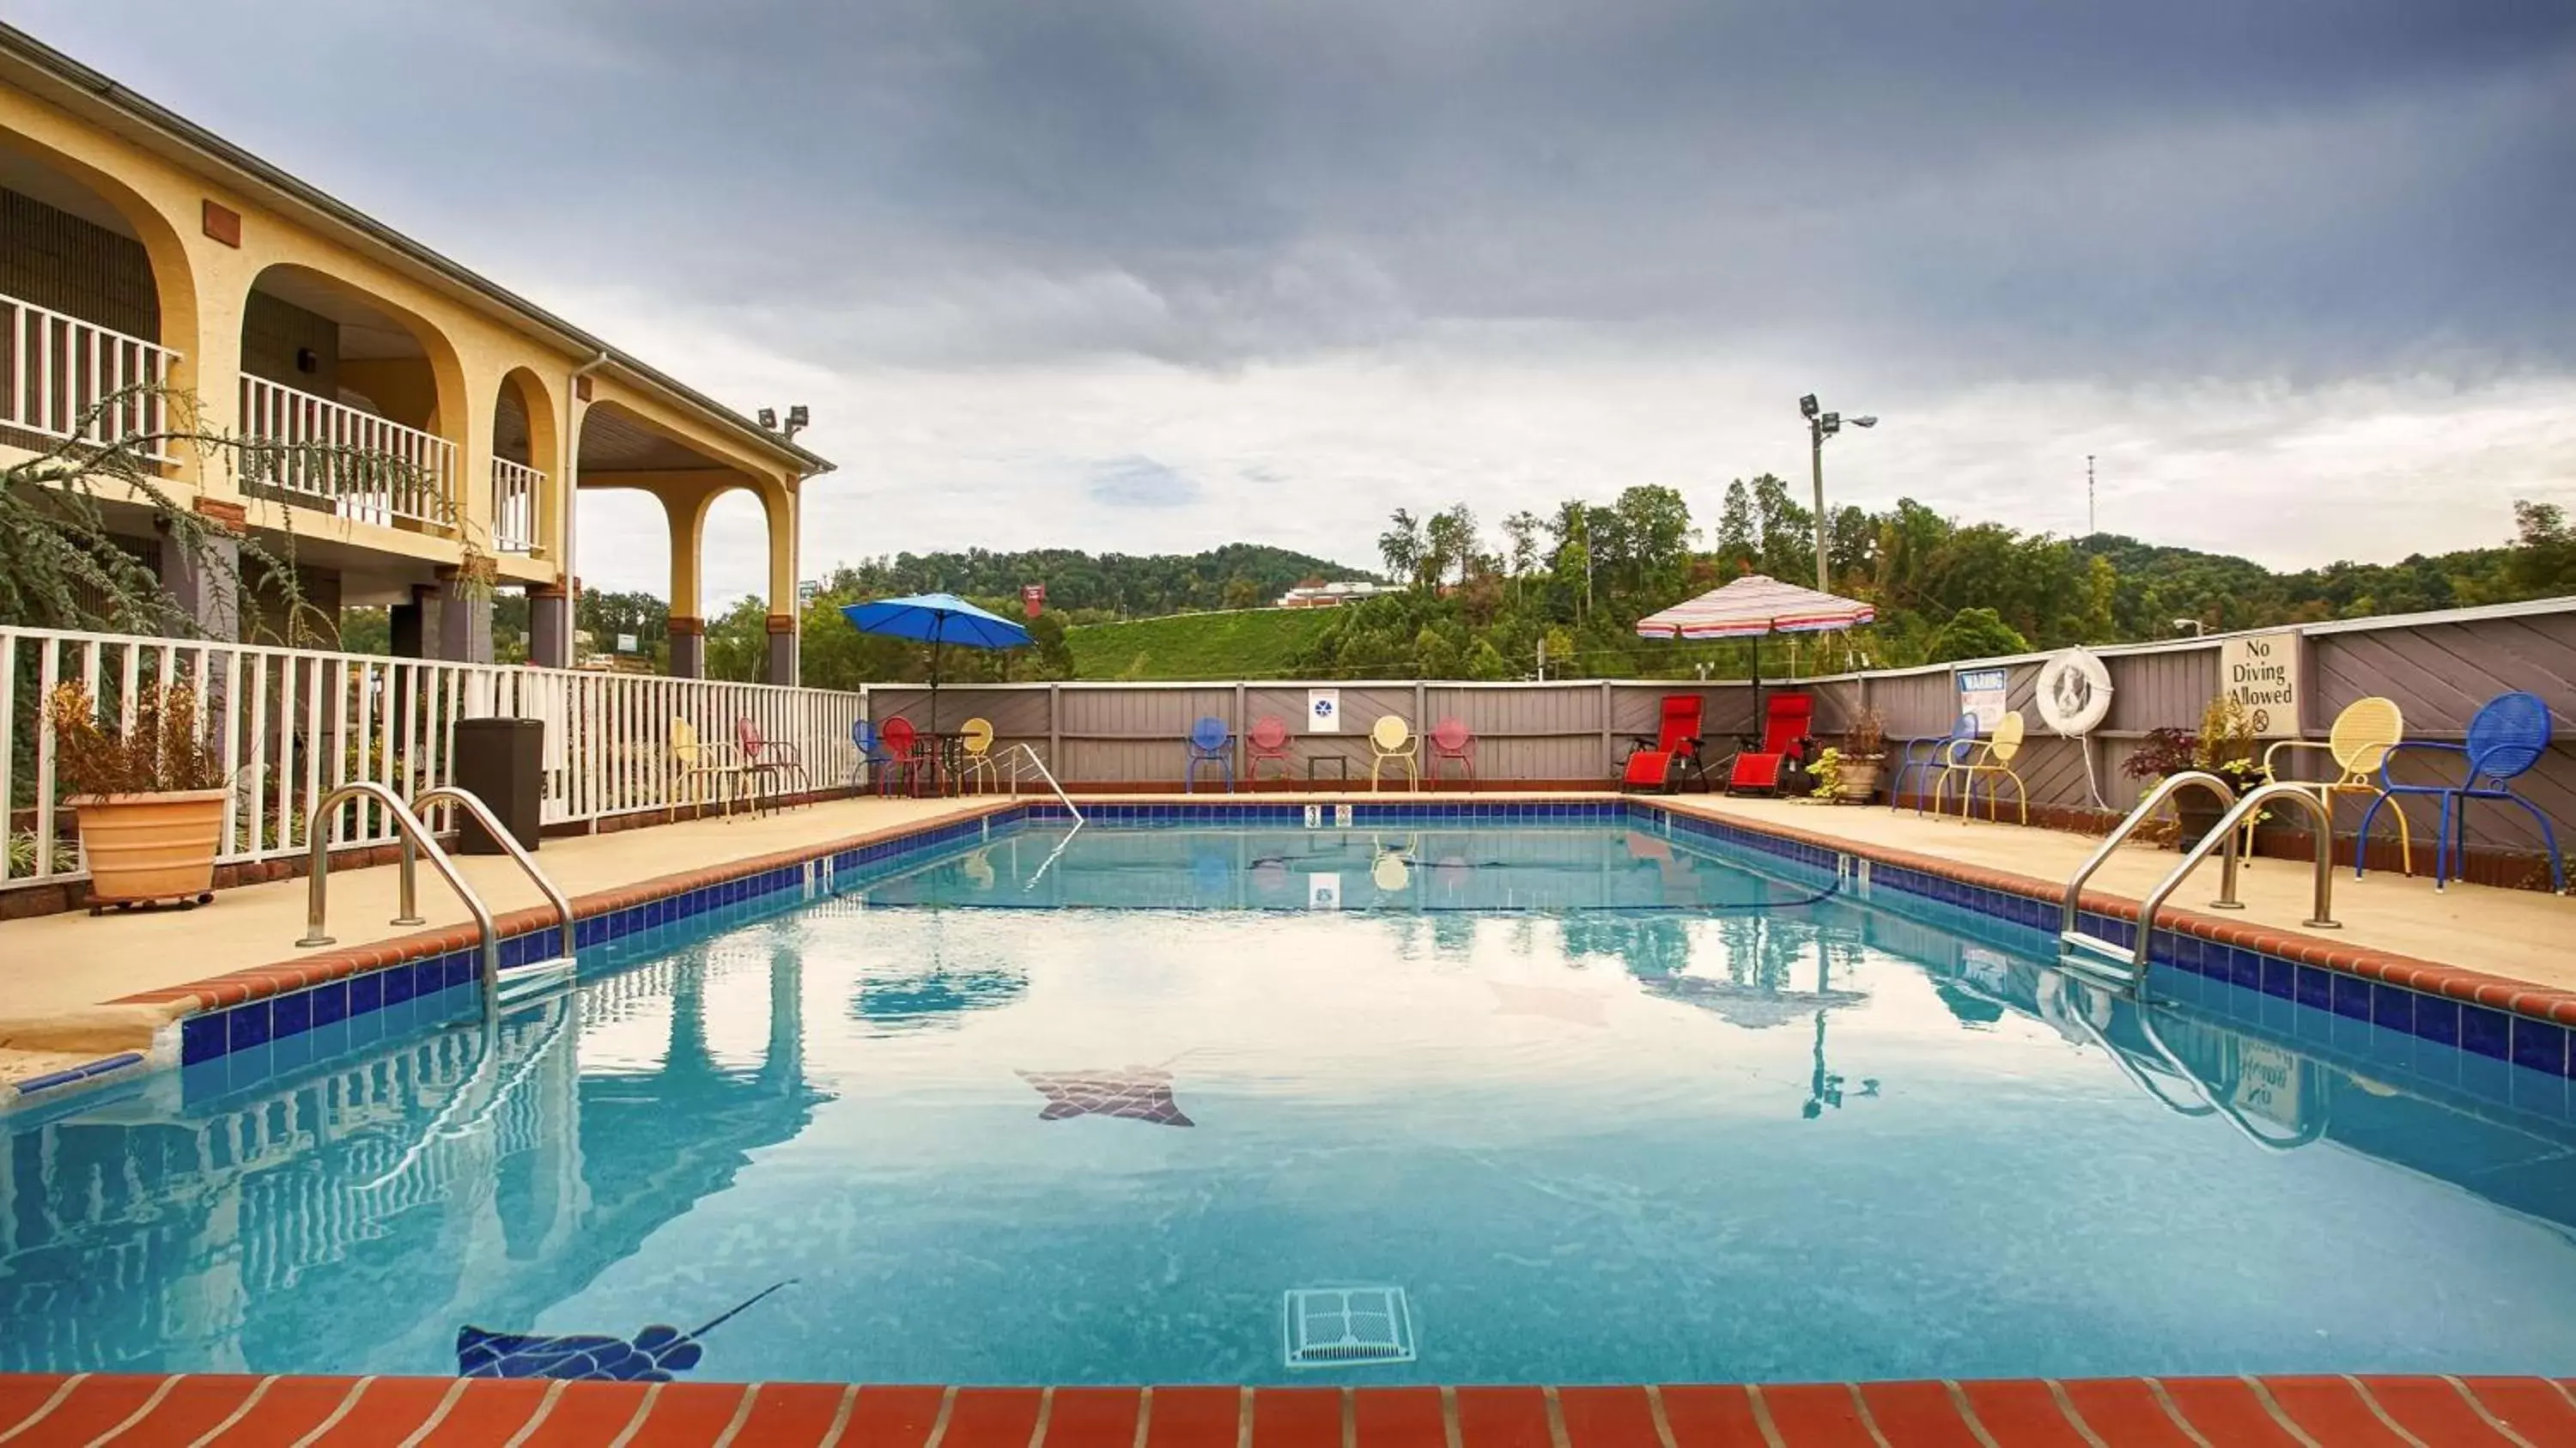 On site, Swimming Pool in Best Western Corbin Inn